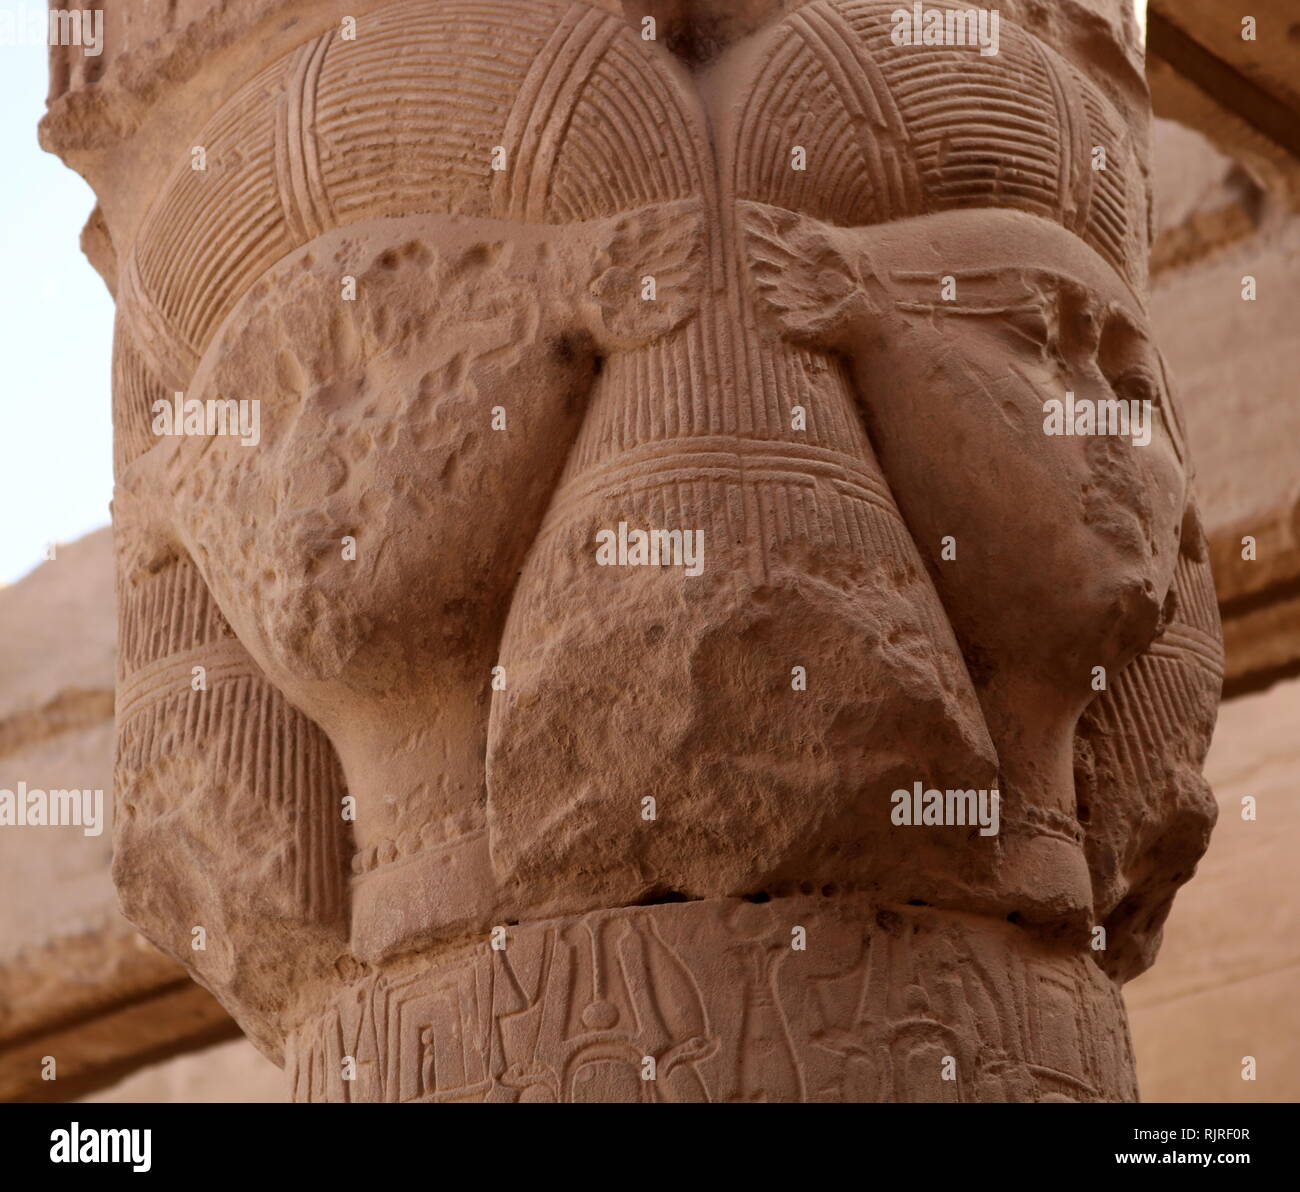 Hathor capital, columna de piedra tallada del templo de Hathor de Dendera, Egipto Foto de stock